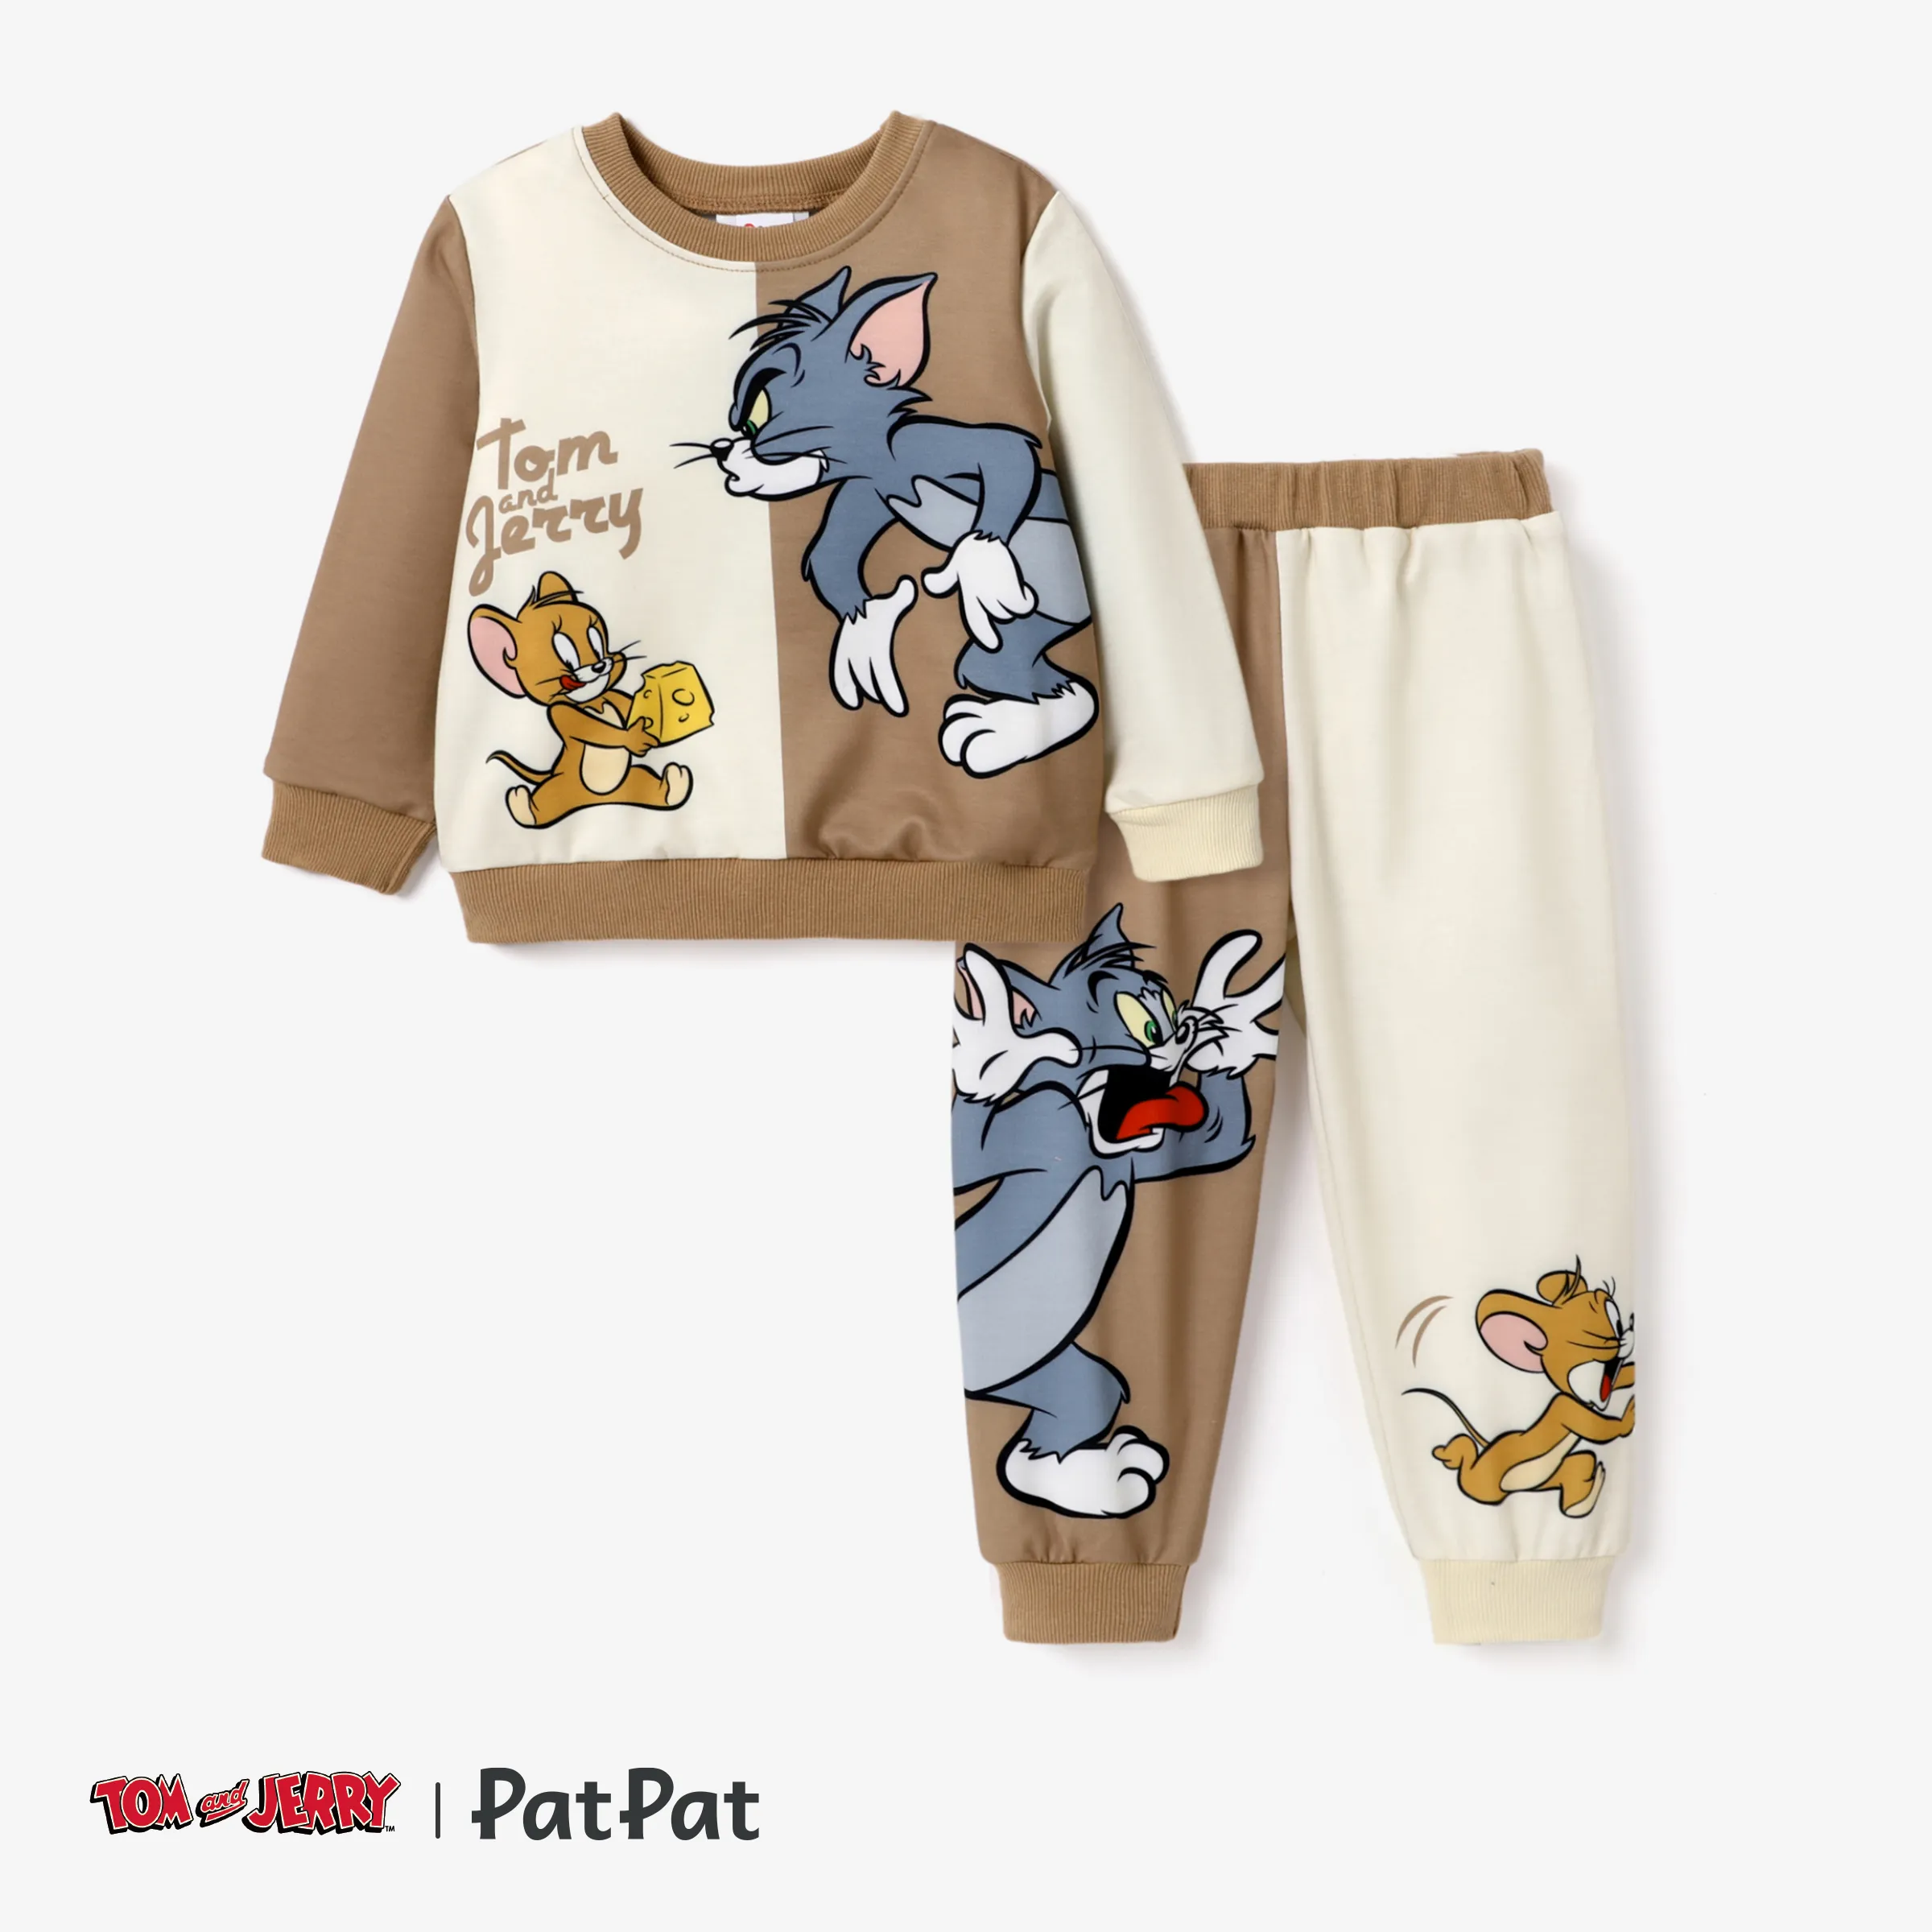 Tom and Jerry 小童 男 童趣 衛衣套裝